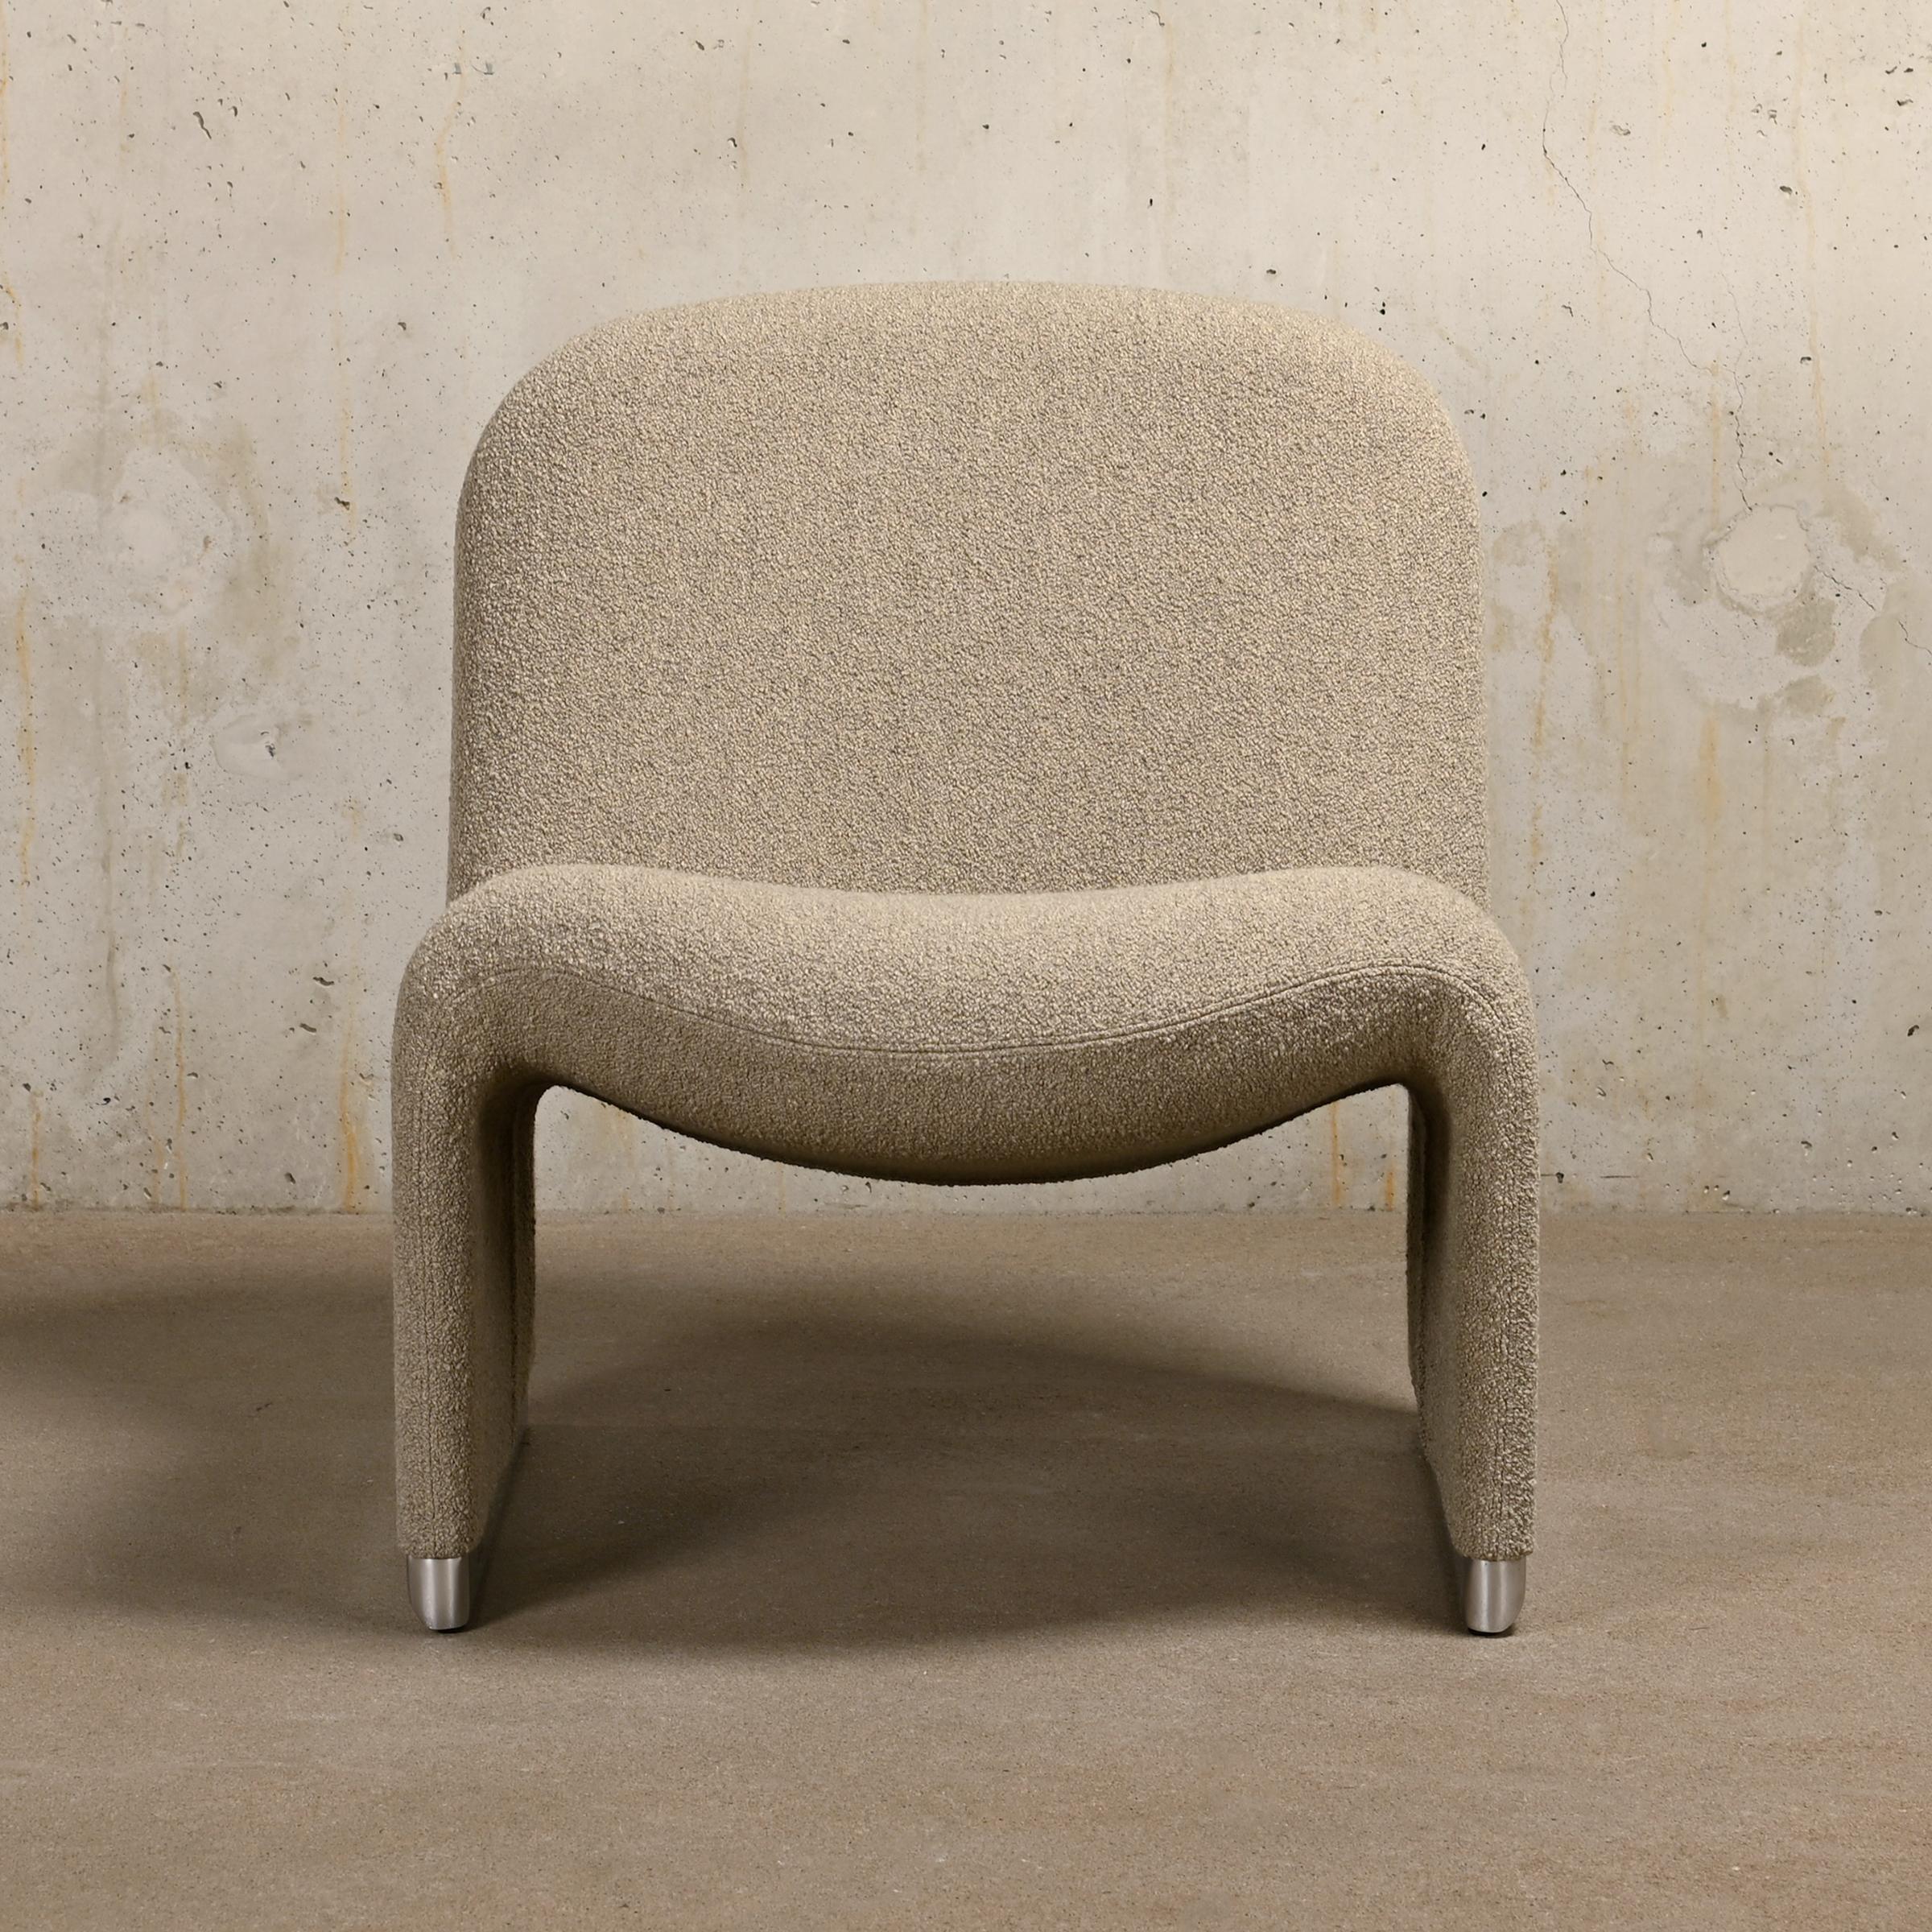 Chaise longue iconique Alky conçue par Giancarlo Piretti dans les années 60 pour Anonima Castelli, Italie. La forme de la chaise est construite avec de la mousse imprimée directement sur un cadre métallique avec des bandes élastiques, pour assurer